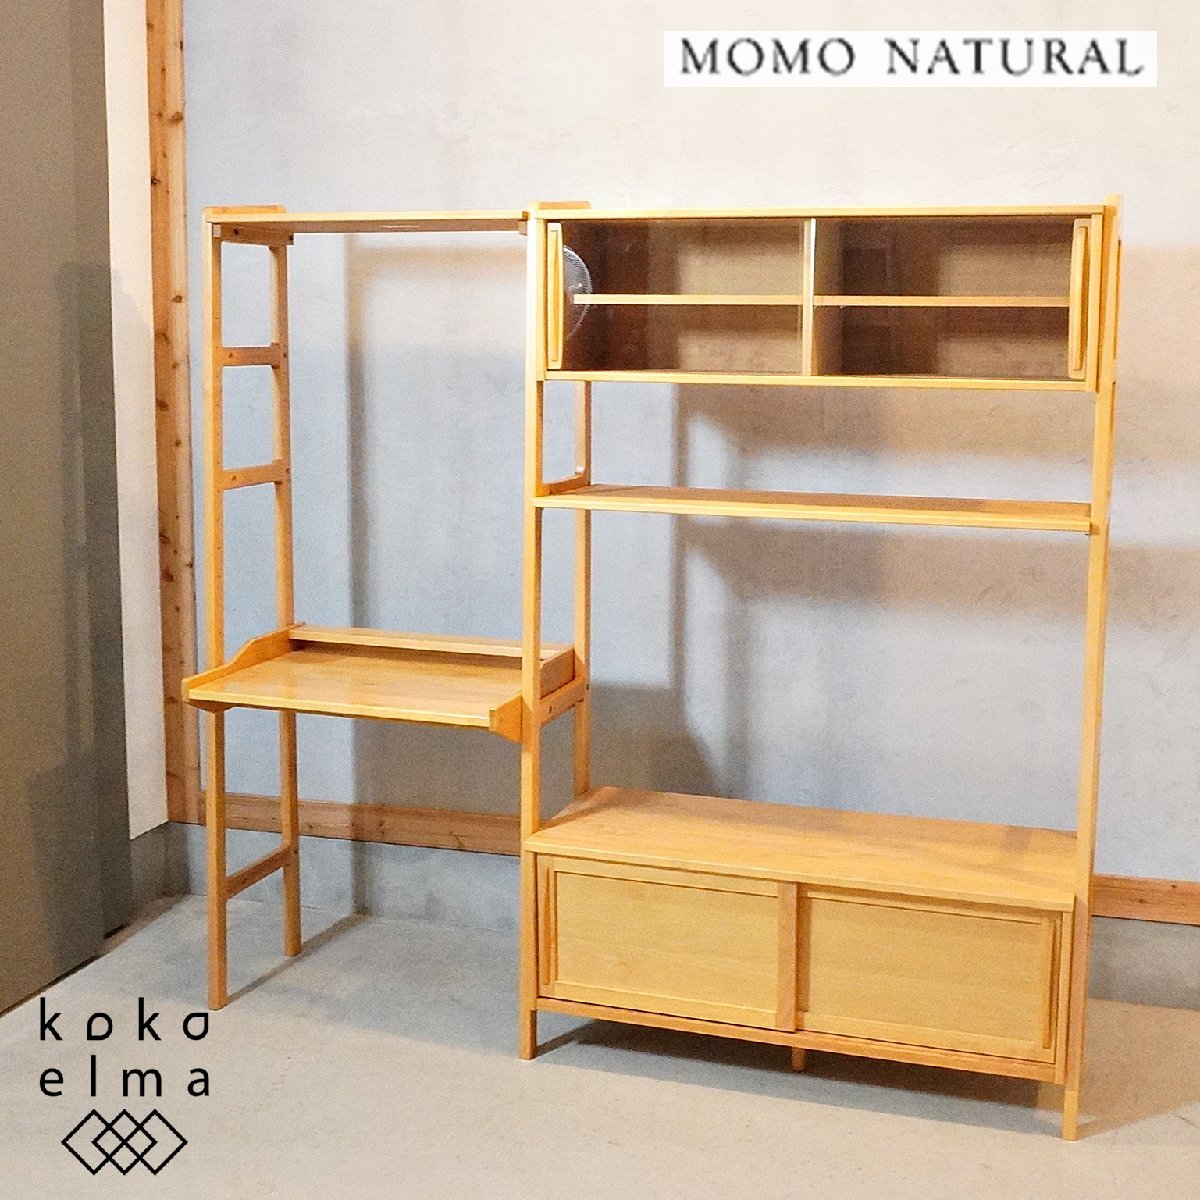 【在庫処分】 VIBO モモナチュラル natural MOMO アルダー材 DJ122 カフェテイスト 北欧スタイル 食器棚 テレビボード リビングボード ユニットデスク 木材